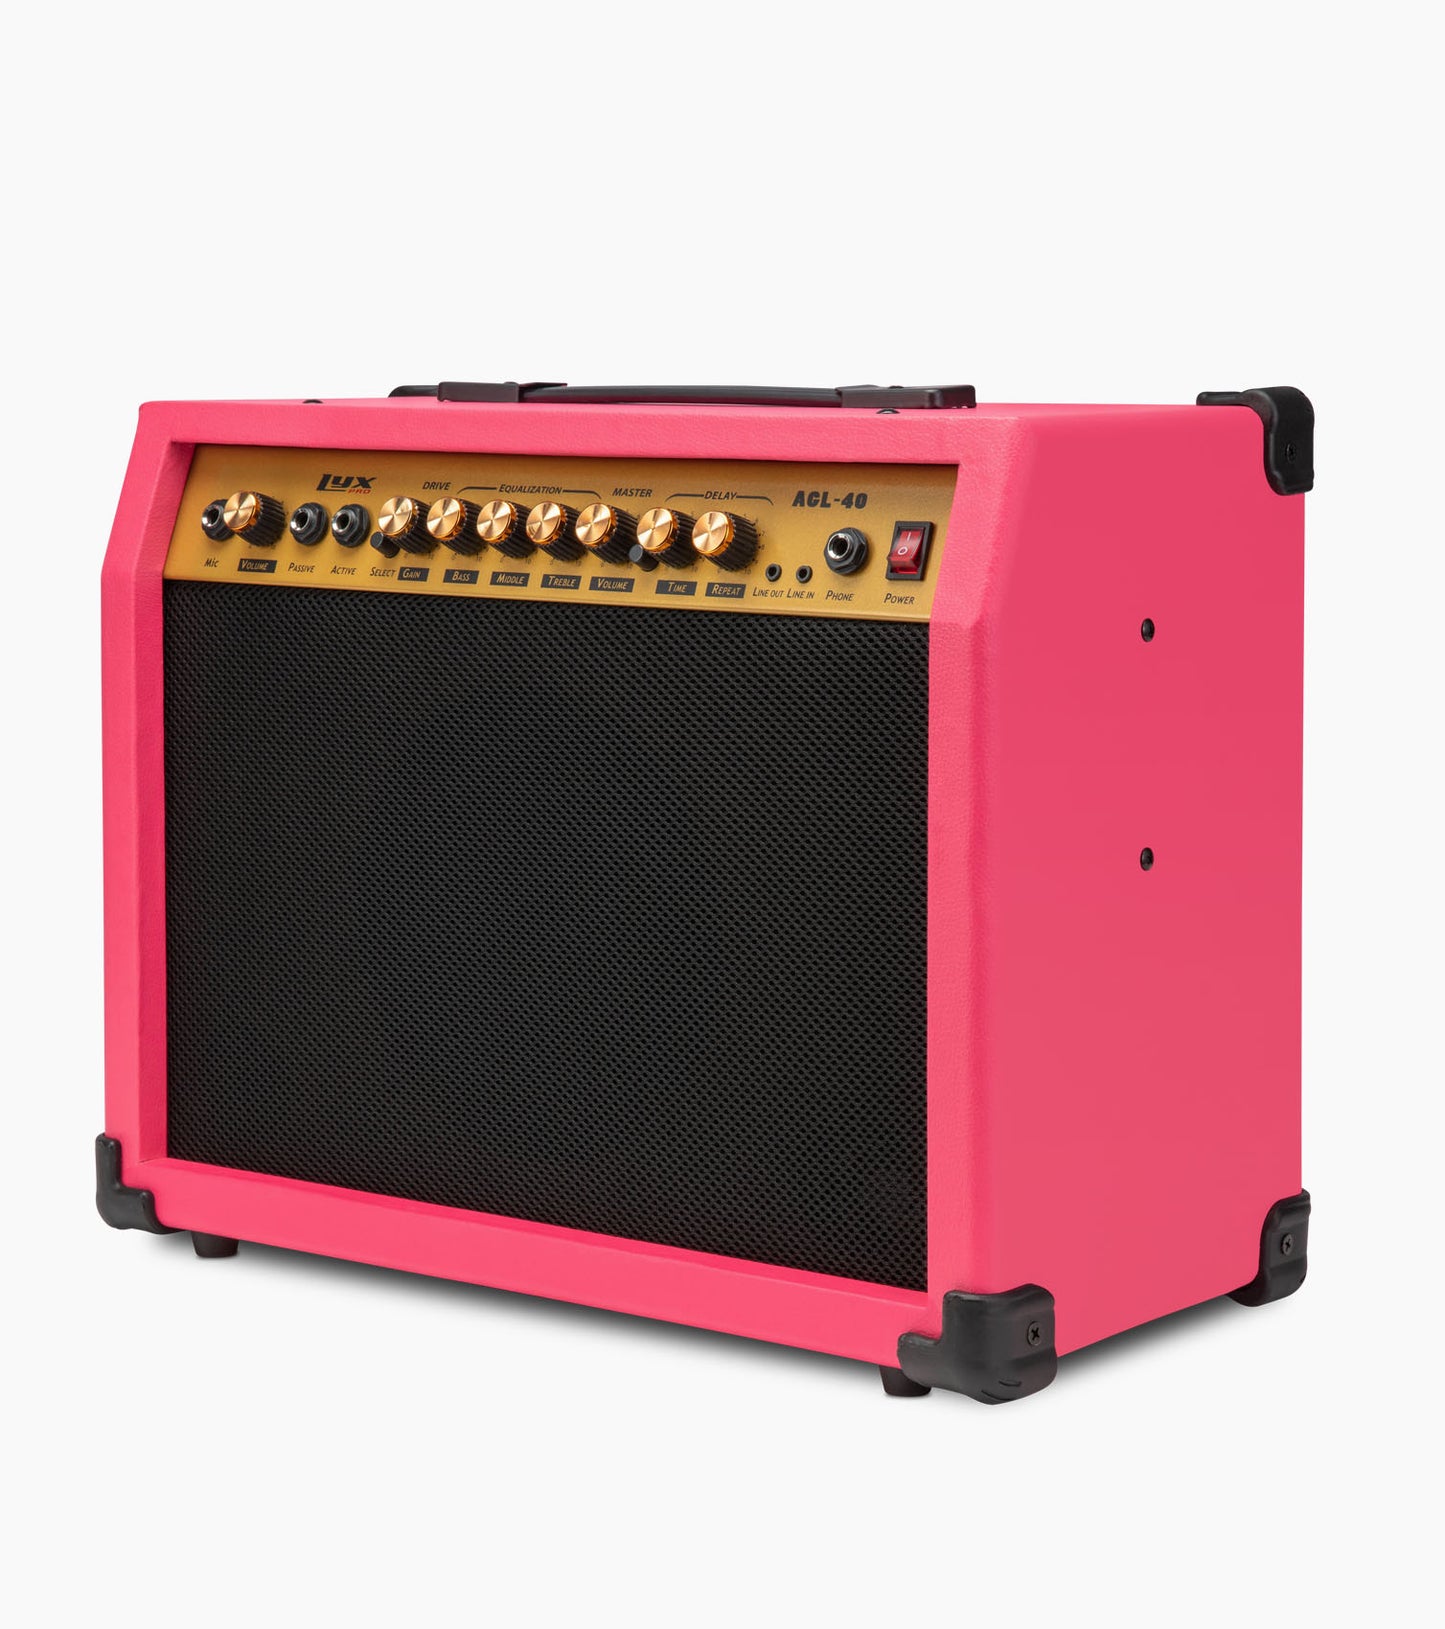 40-Watt Electric Guitar Amplifier Pink - Side